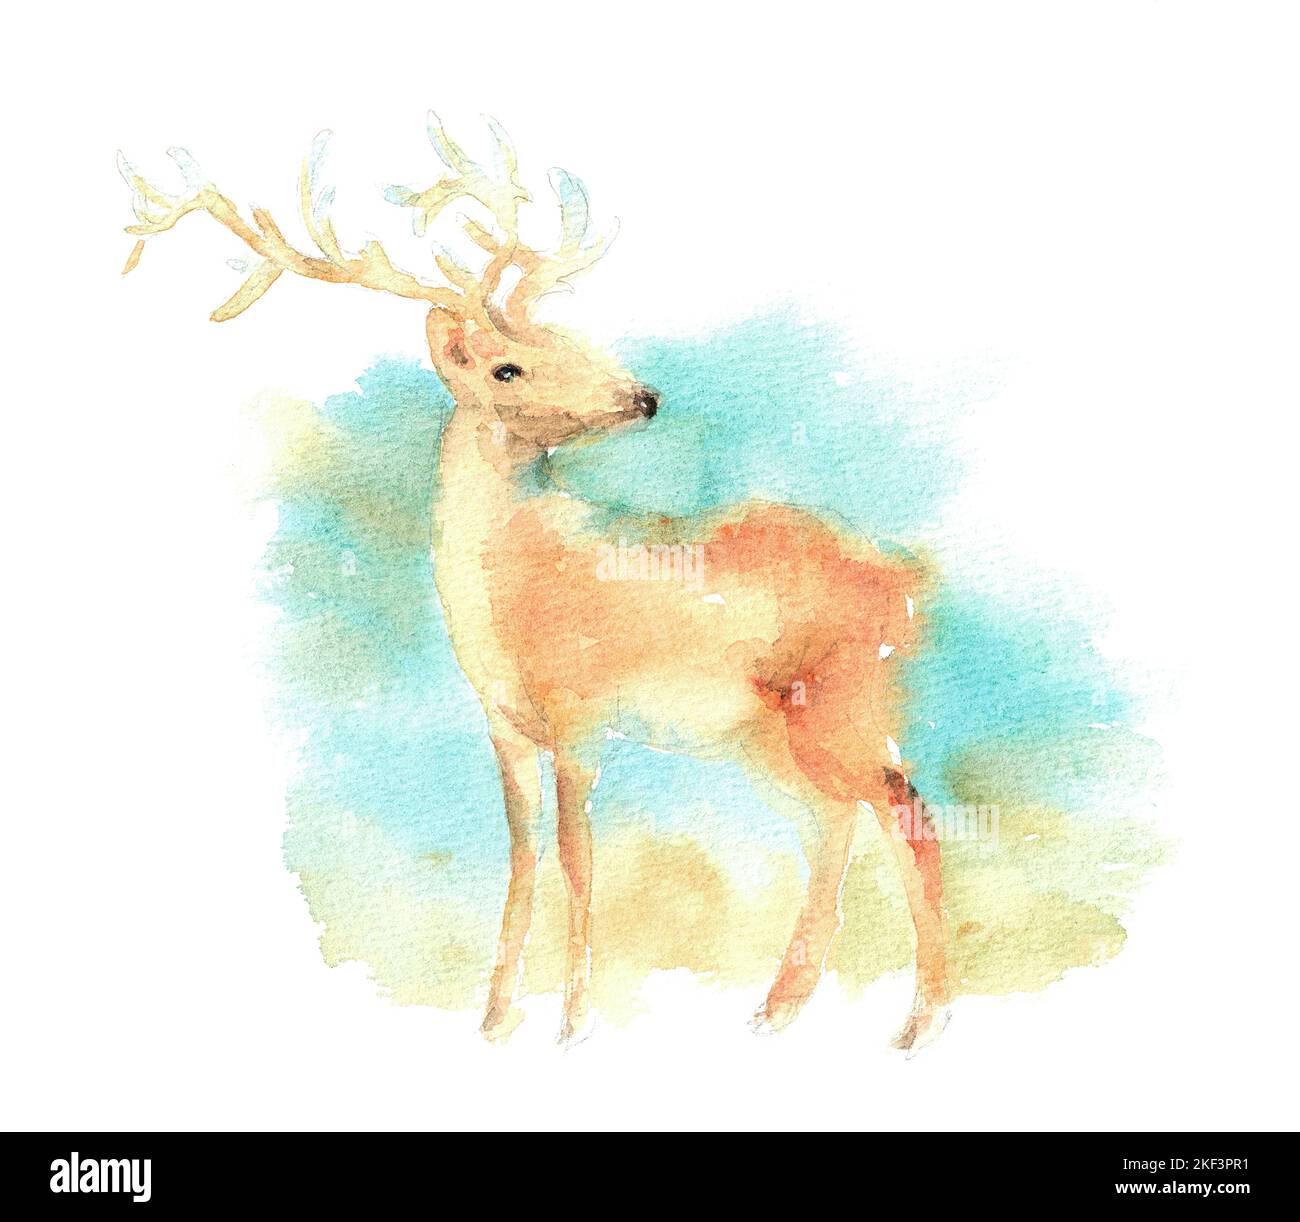 Acquerello illustrazione di un cervo rosso su sfondo paesaggio. Nella tecnica di sfocatura con grana della carta. Pittura nelle tonalità marrone chiaro e turchese. Foto Stock